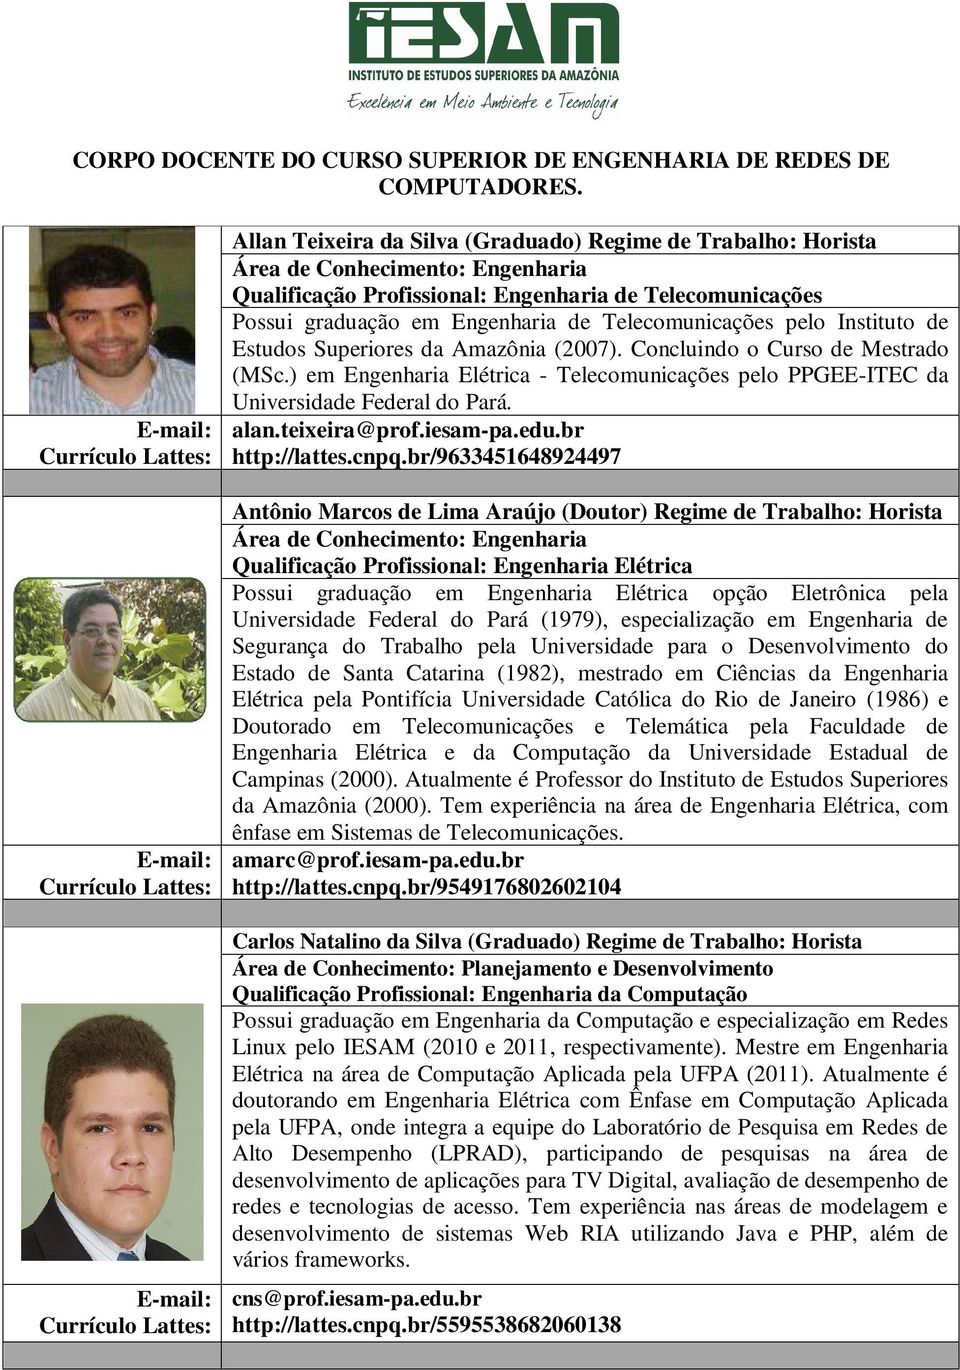 Superiores da Amazônia (2007). Concluindo o Curso de Mestrado (MSc.) em Engenharia Elétrica - Telecomunicações pelo PPGEE-ITEC da Universidade Federal do Pará. alan.teixeira@prof.iesam-pa.edu.